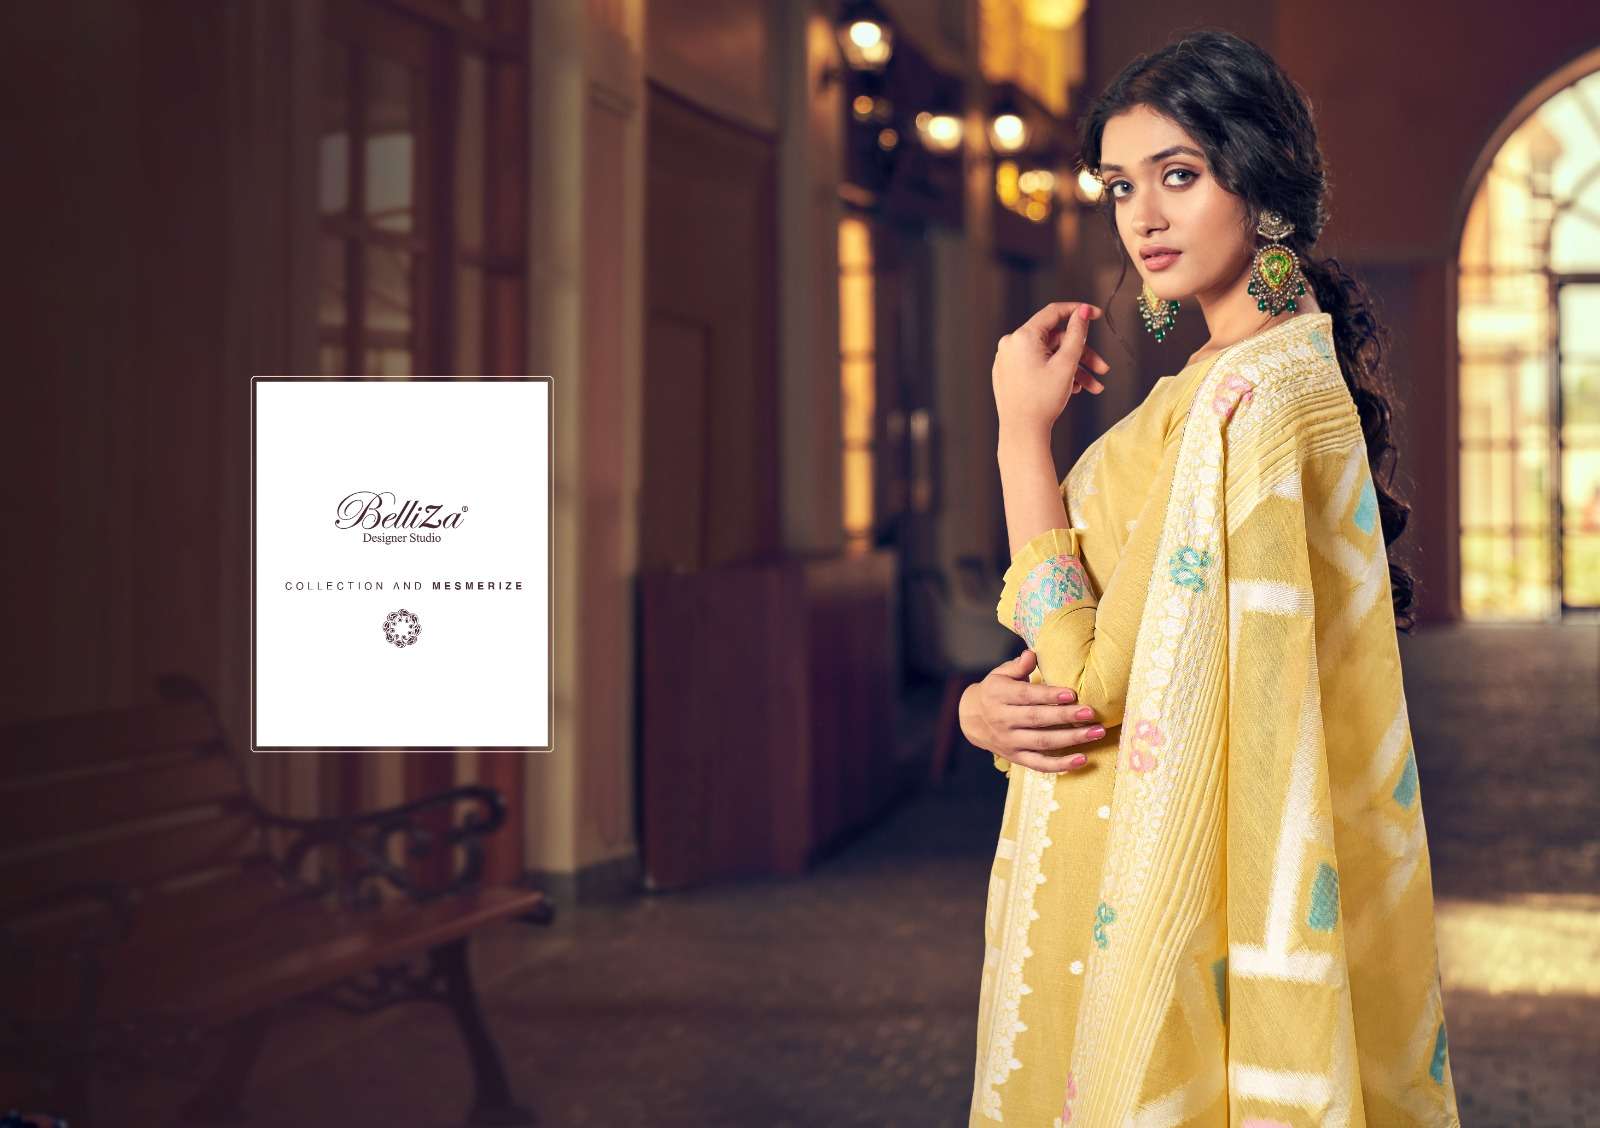 belliza designer studio odhni pure cotton fancy dress material collection wholesale price surat